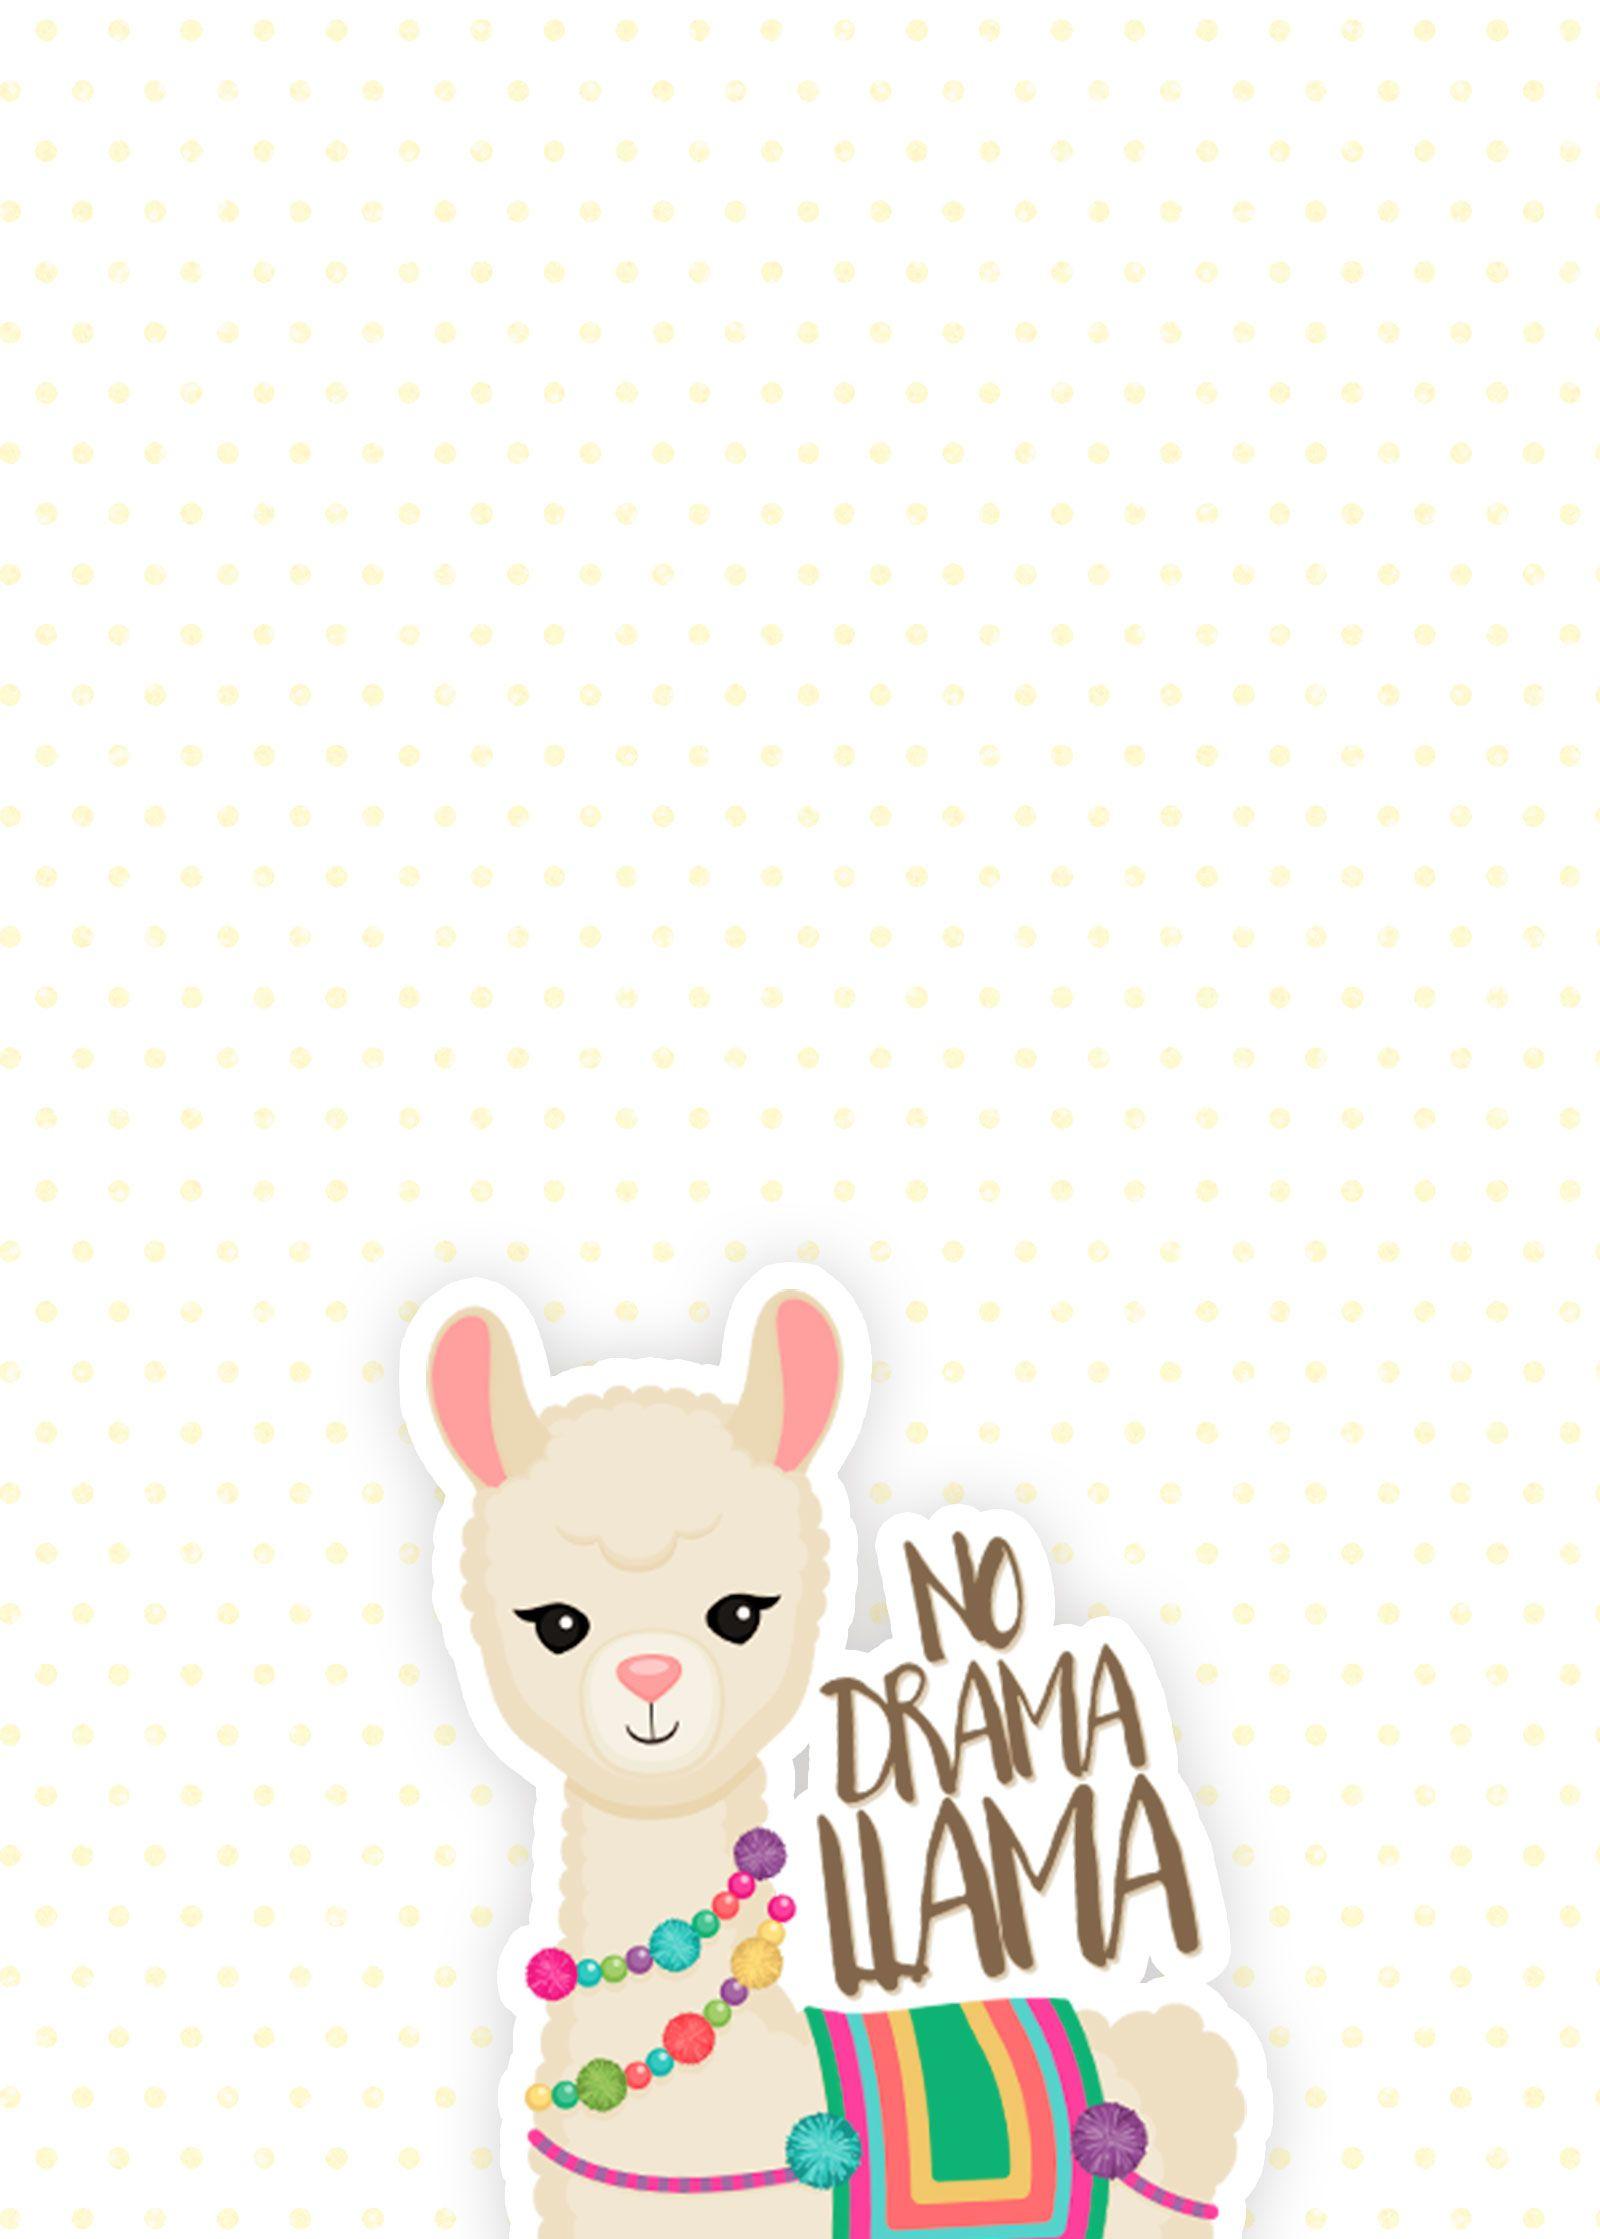 For the Love of Llamas! 10 Cutesy Llama iPhone Wallpaper. The Review Wire. iPhone wallpaper, Cute llama, Cute wallpaper